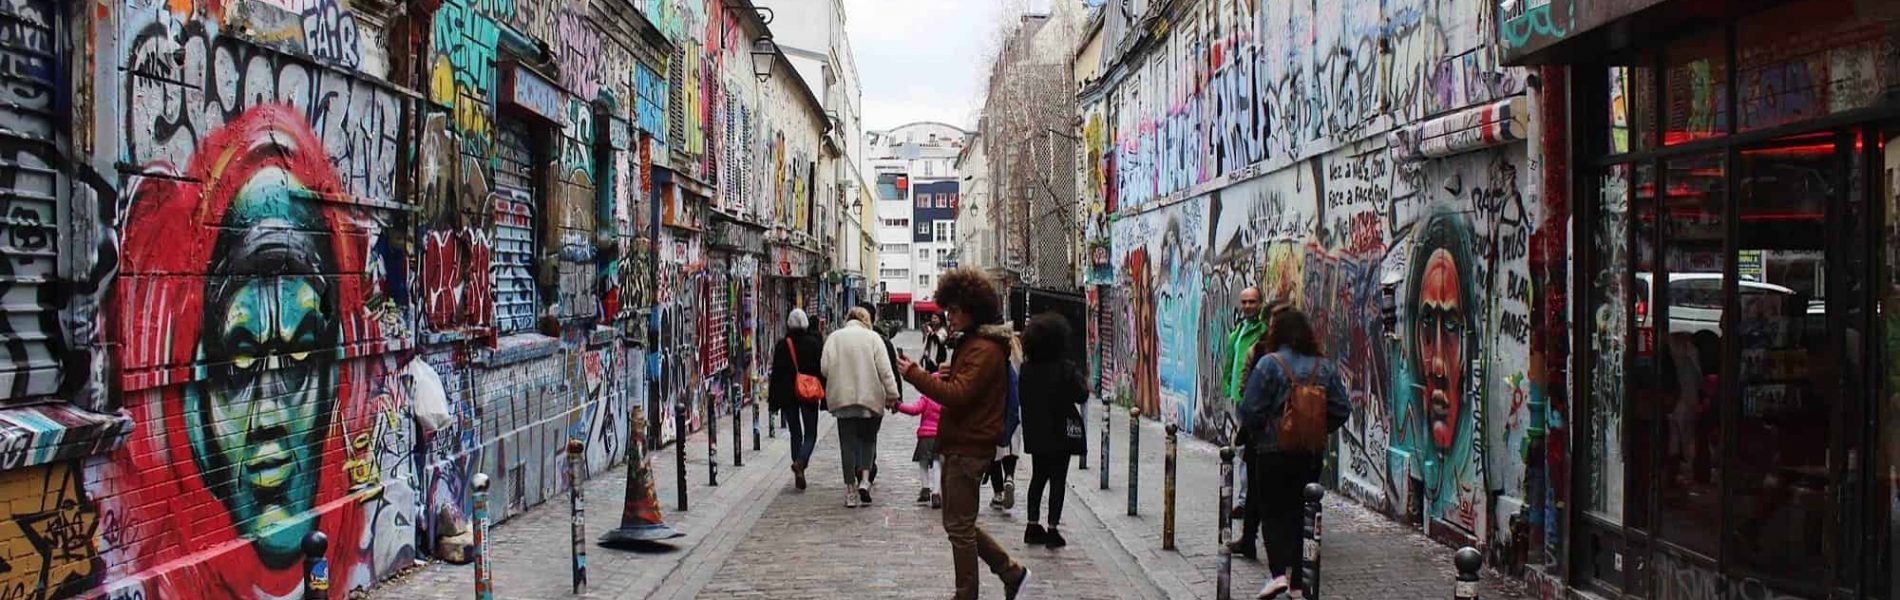 לא נמצאים במדריך: 5 מקומות שאסור לפספס בפריז